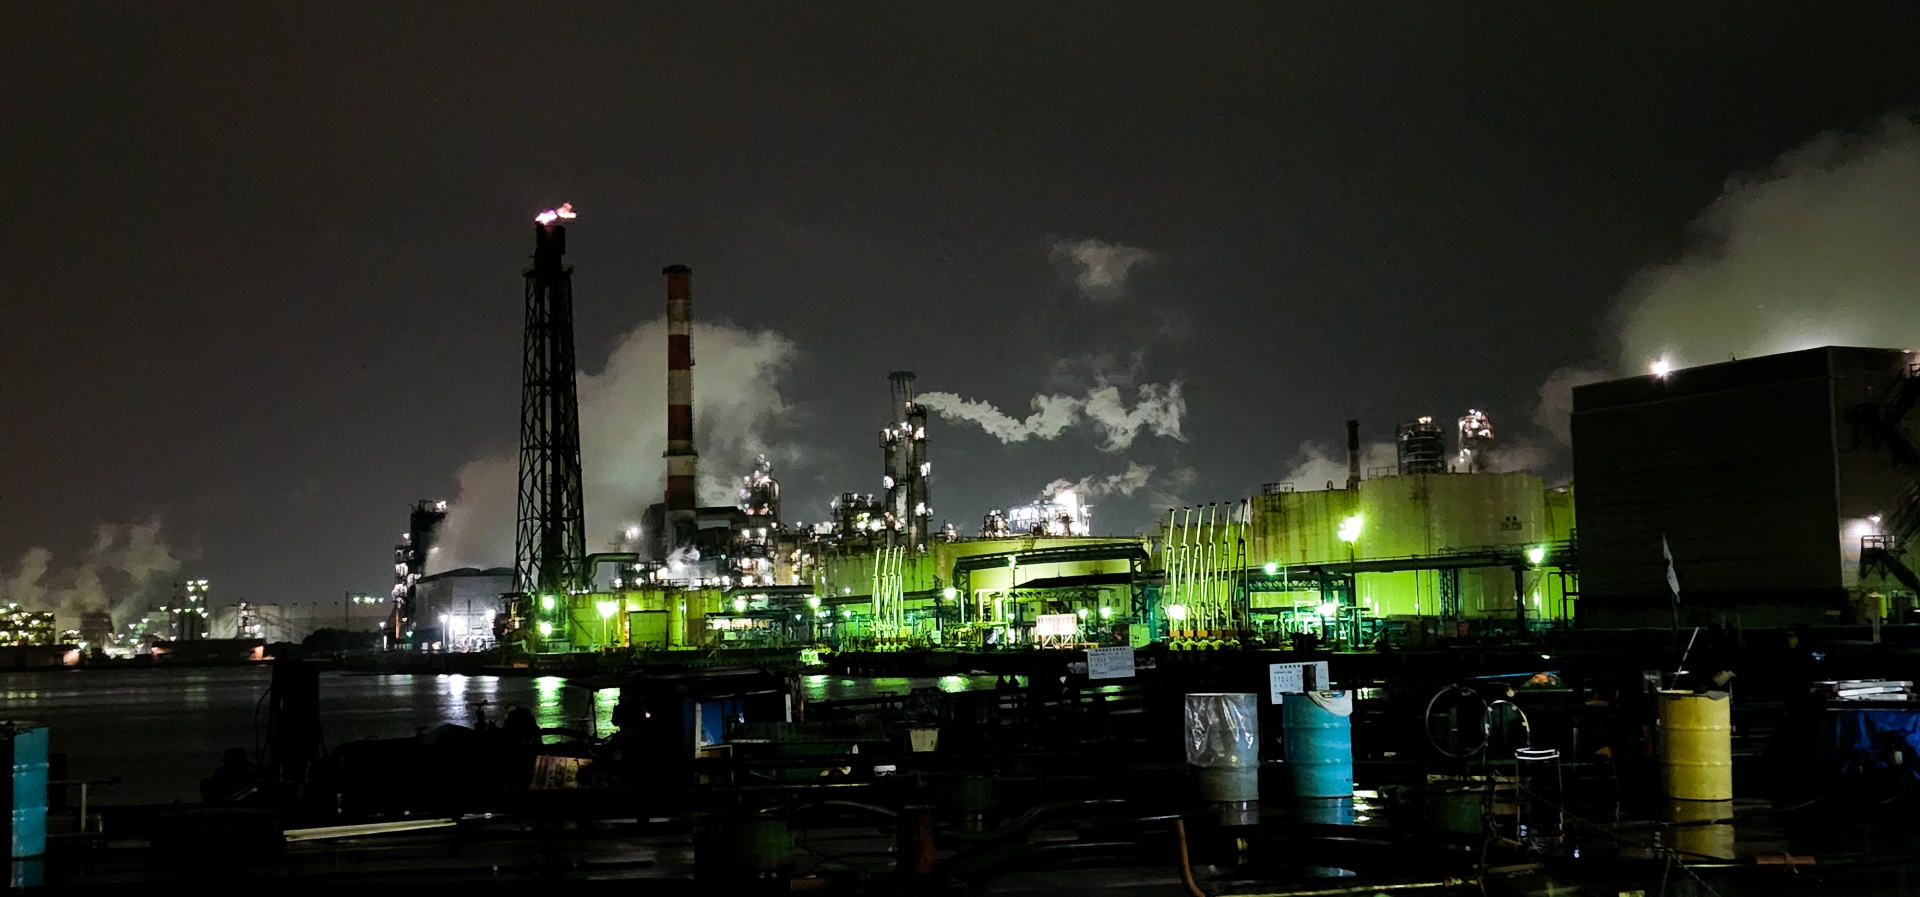 輝くライトと産業の息吹 - 工場夜景の美と意味